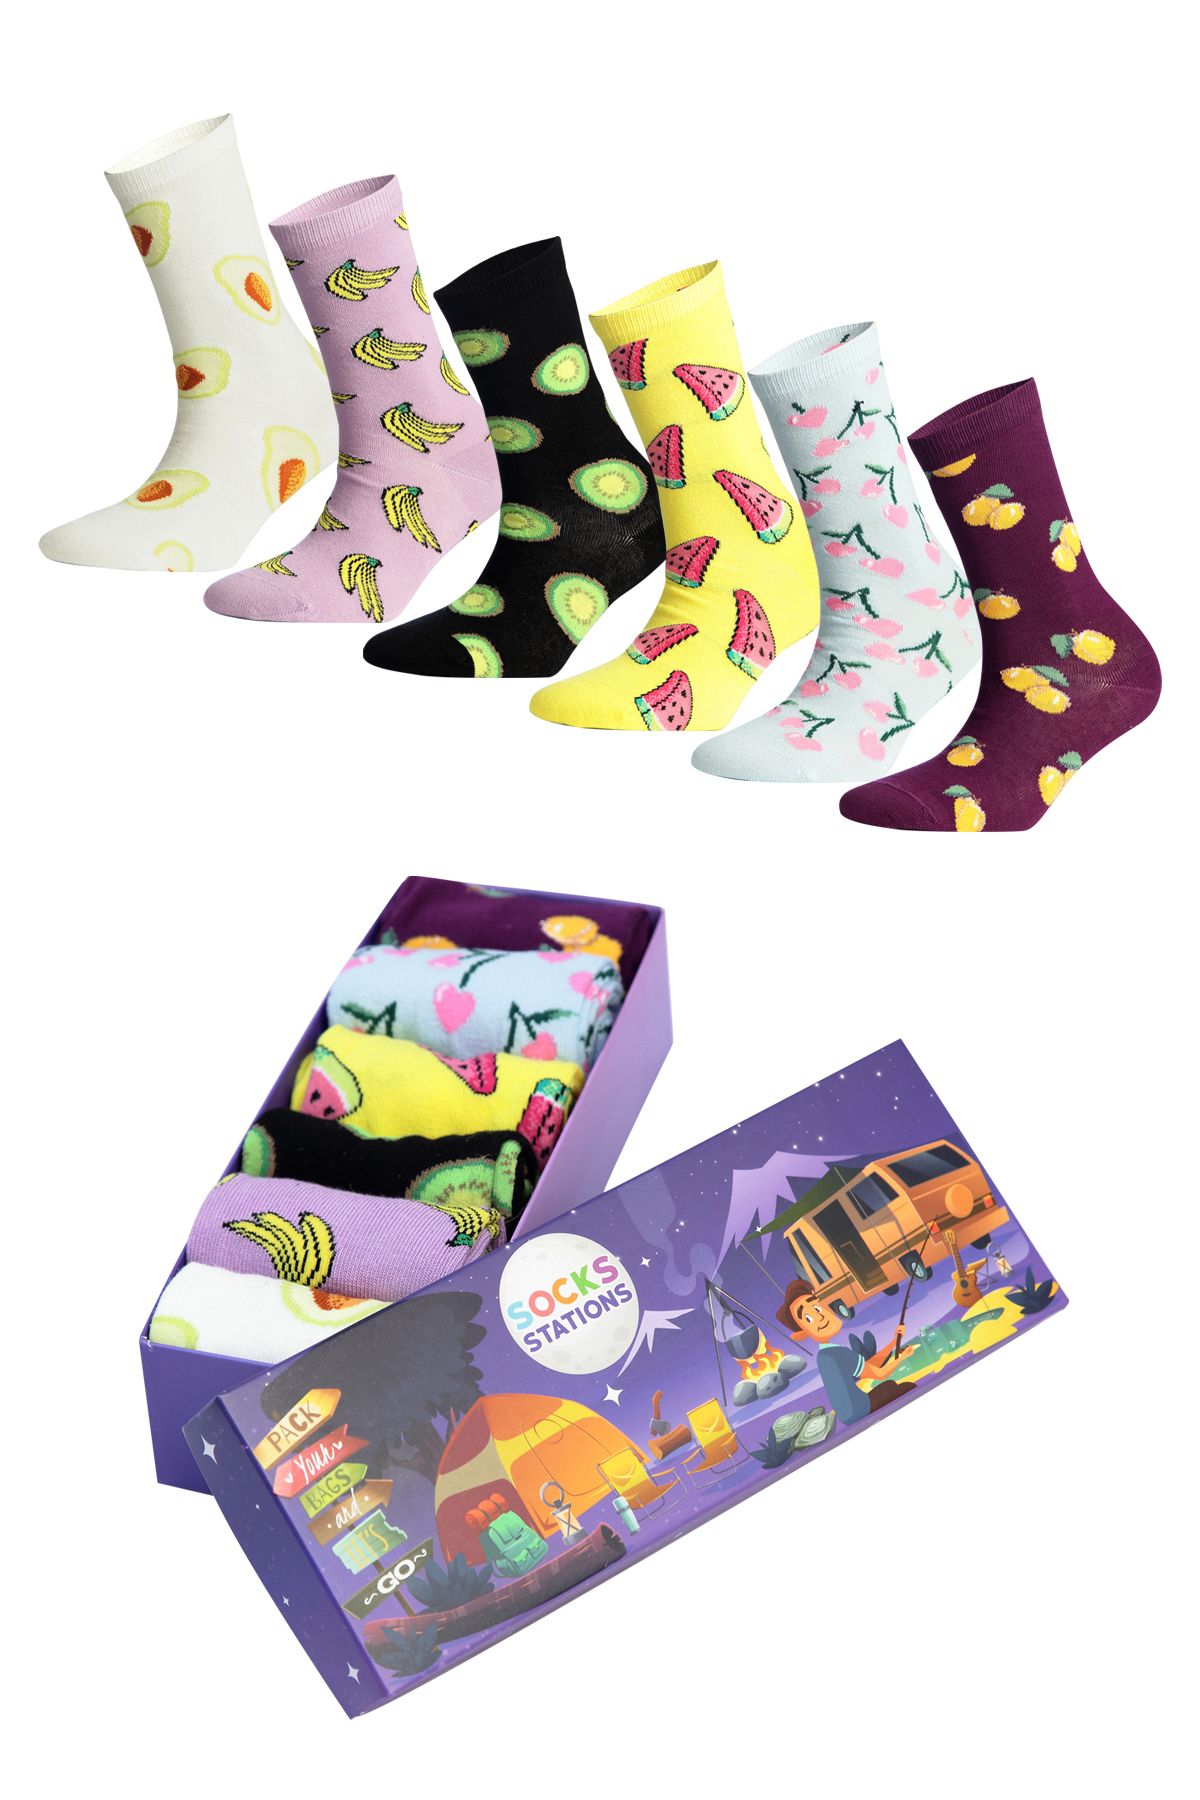 Socks Stations Desenli Çorap Seti 6'lı Renkli Kadın Çorap Ve Erkek Çorap Renkli Çorap Socks Kışlık Çorap